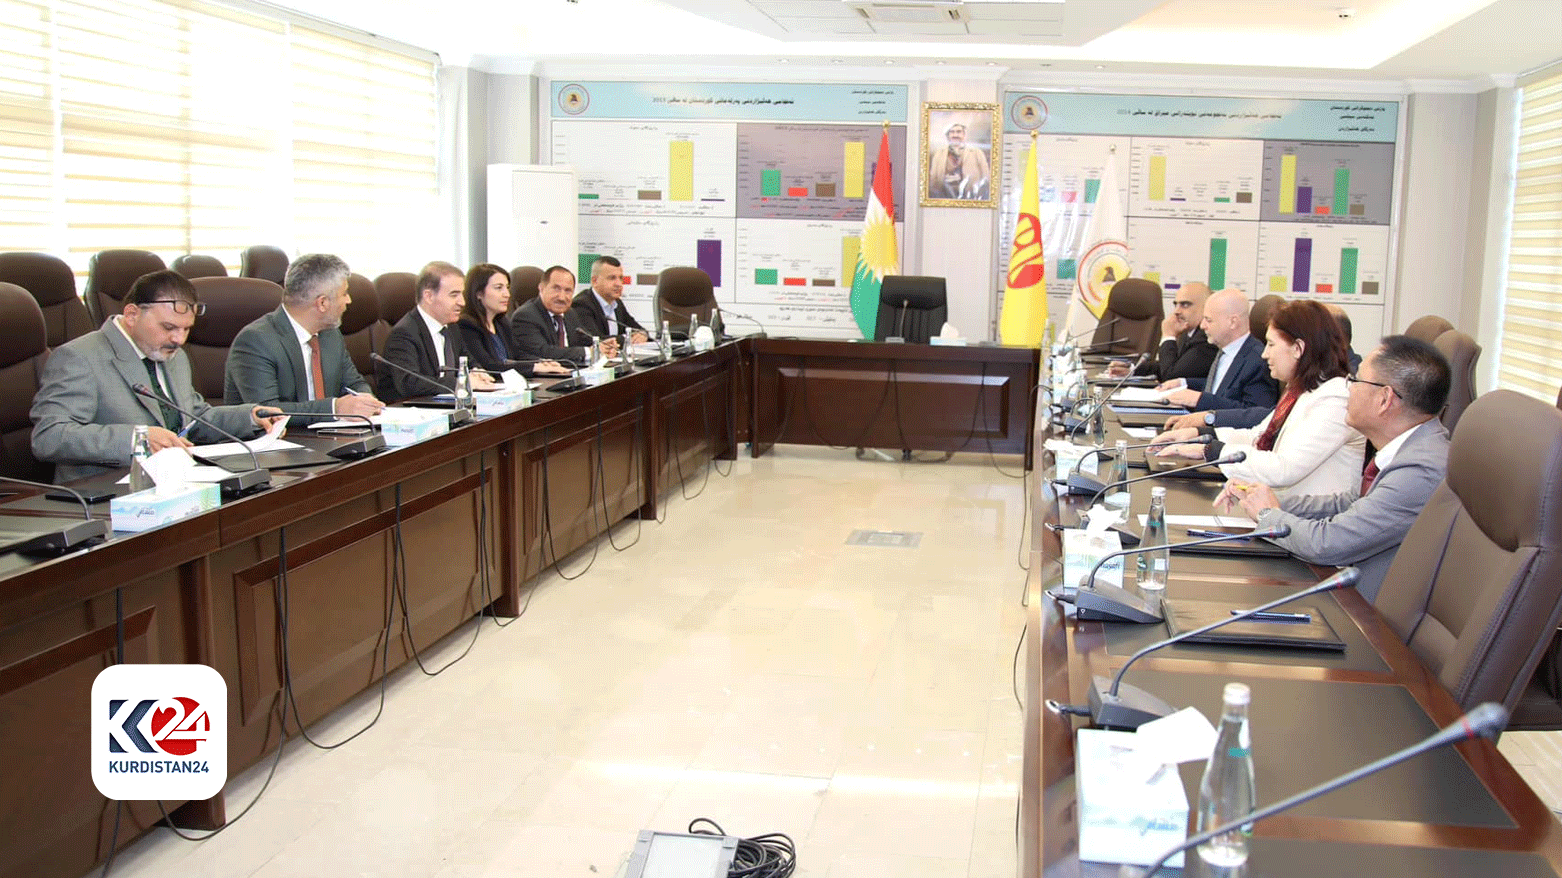 نشست هیئت پارت دموکرات کوردستان و هیئت نمایندگی سازمان ملل در عراق